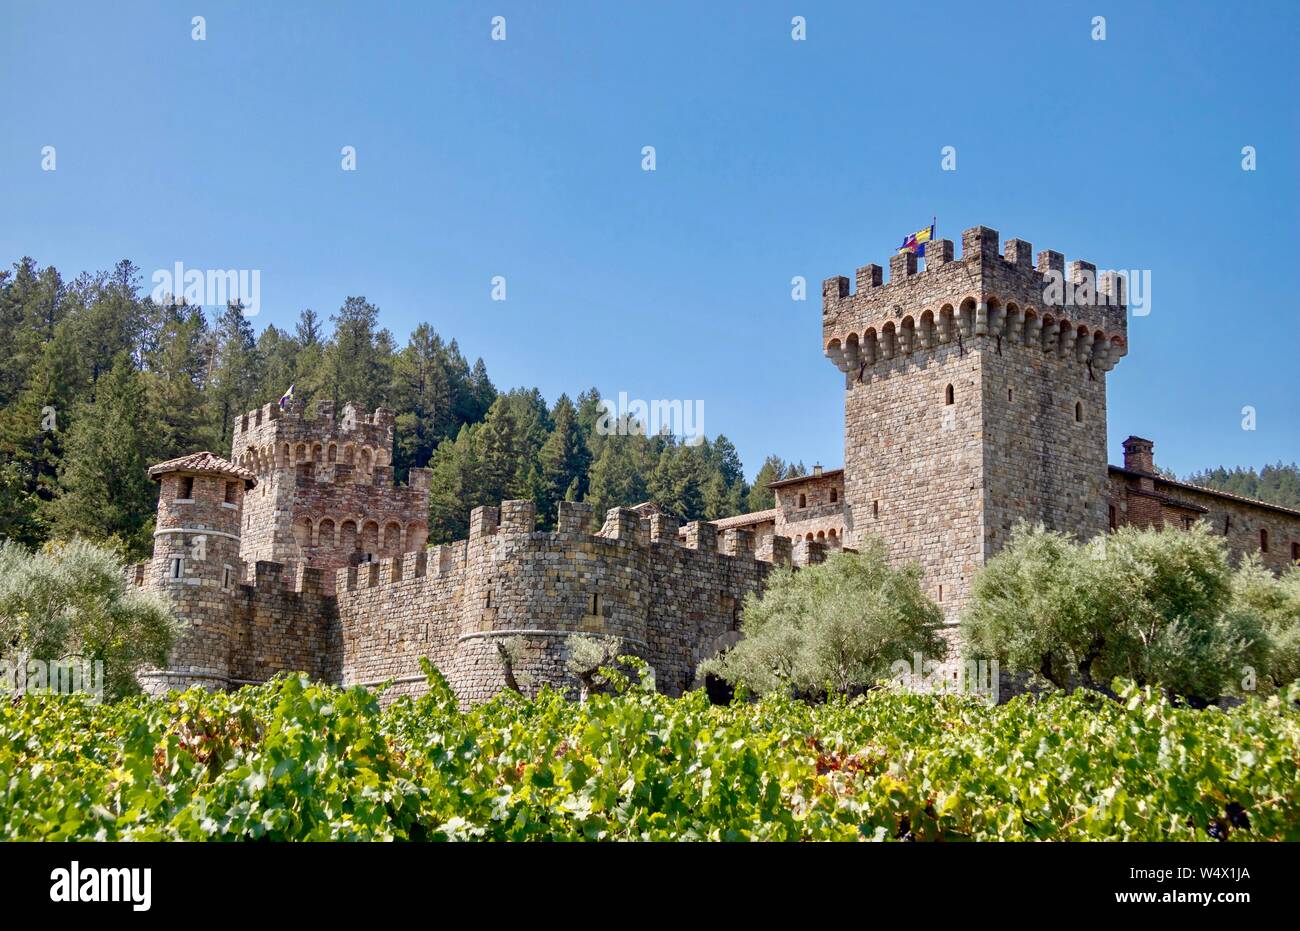 Castello di Amorosa di Calistoga California, un ispirazione toscana azienda vinicola nella Napa Valley Foto Stock